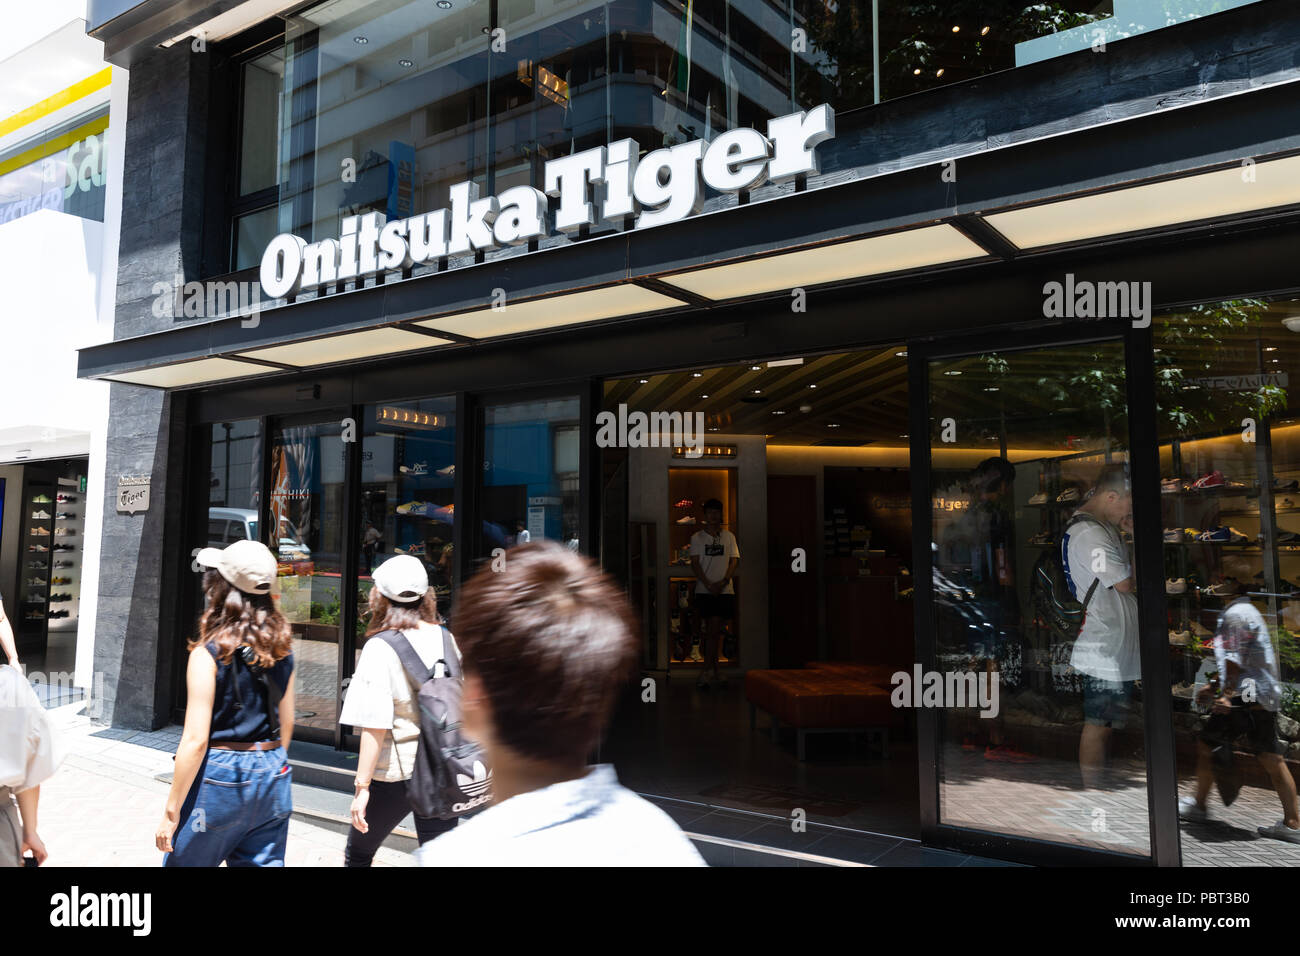 biggest onitsuka tiger shop in tokyo